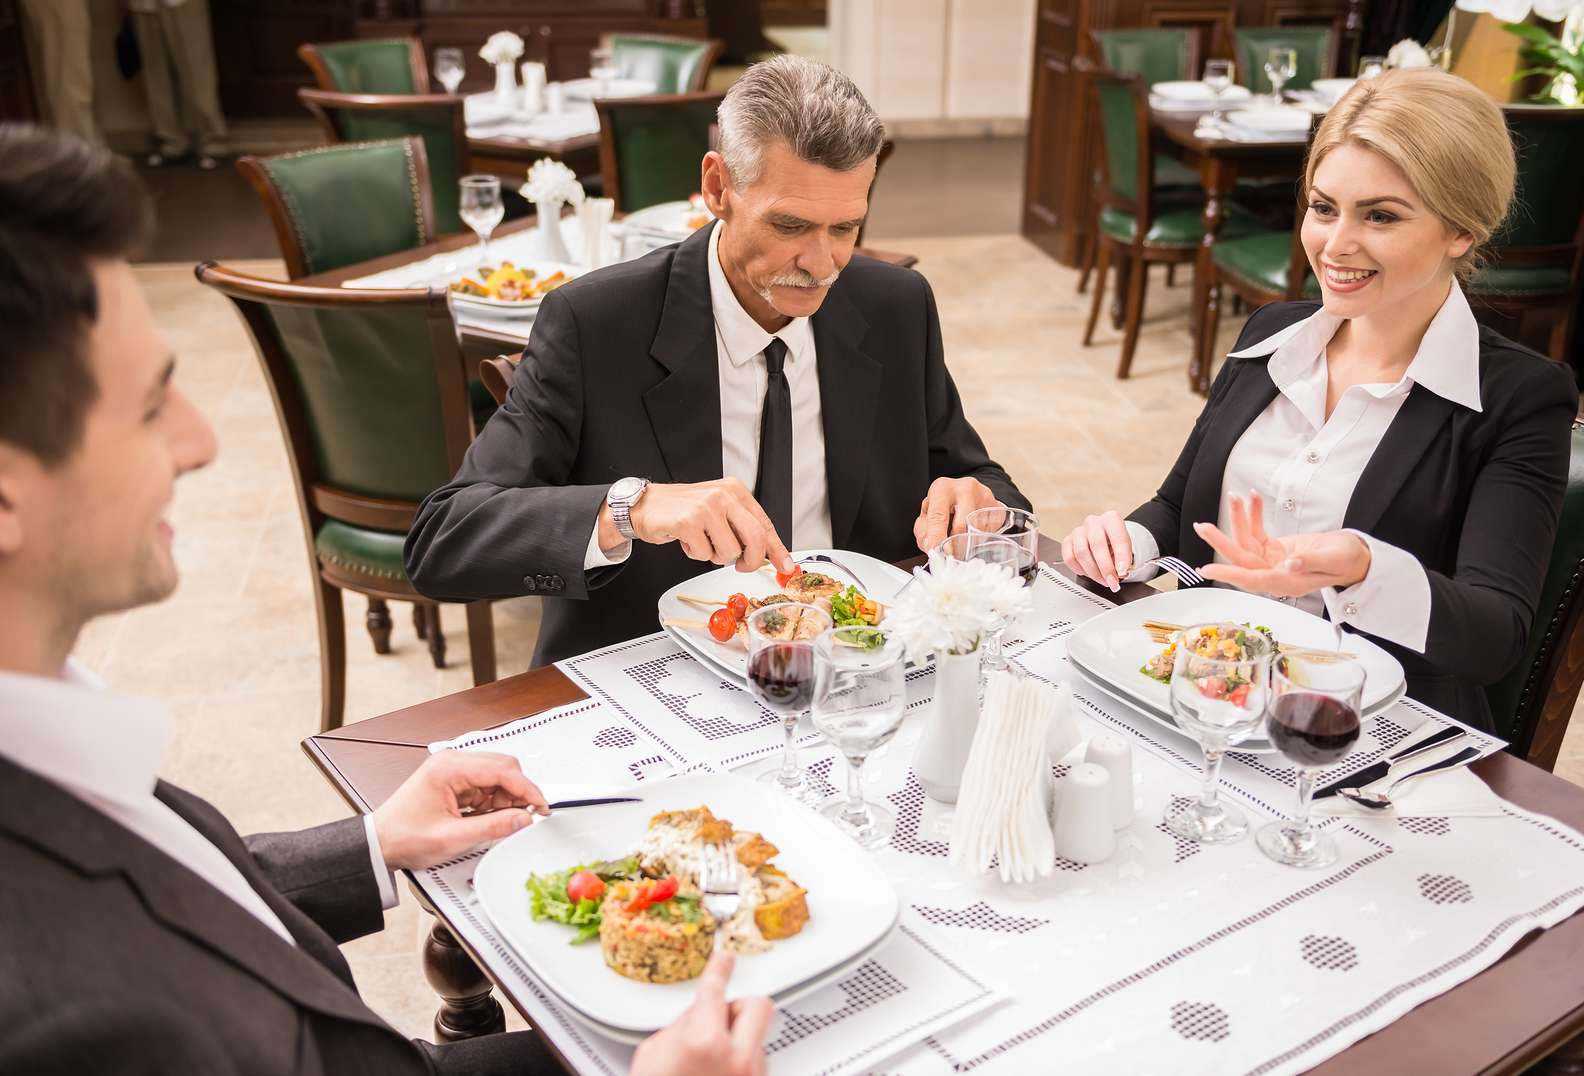 Ресторанный этикет - как правильно вести себя в ресторане
ресторанный этикет - как правильно вести себя в ресторане